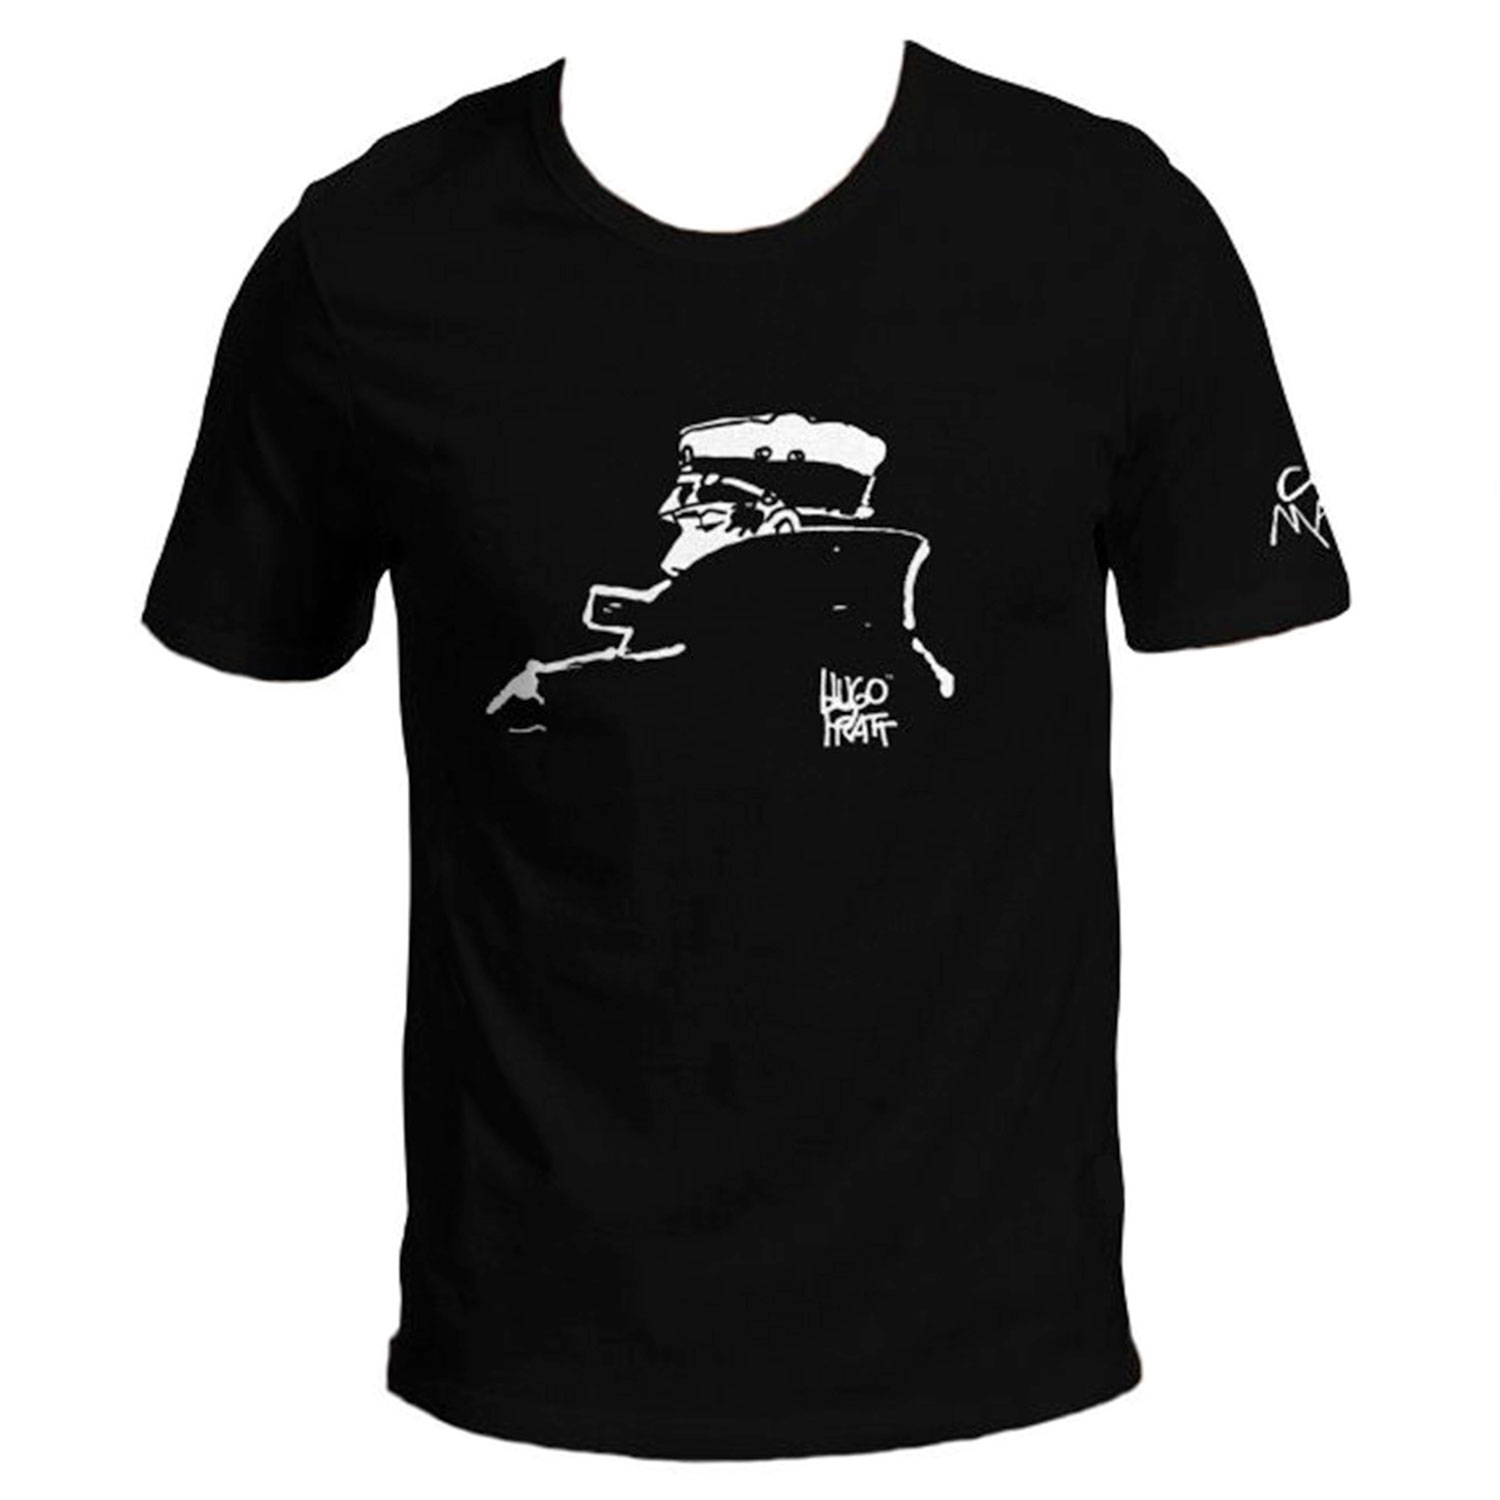 T-shirt Hugo Pratt :  Corto Maltese , Nocturne - Noir - Taille S